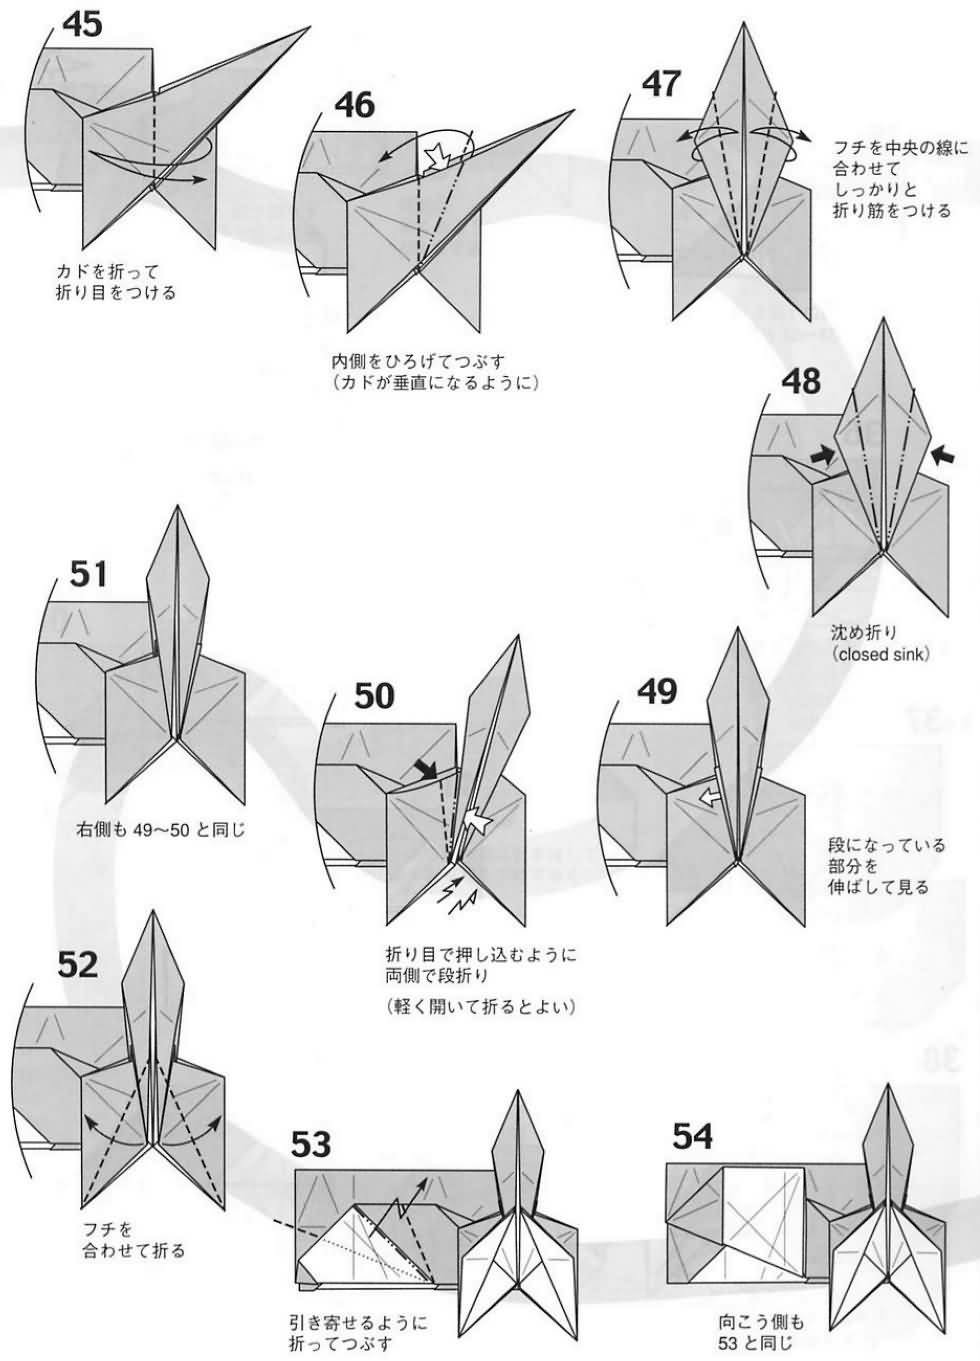 纸艺手工折纸艺术，小松英夫犬狗手工折纸图纸教程